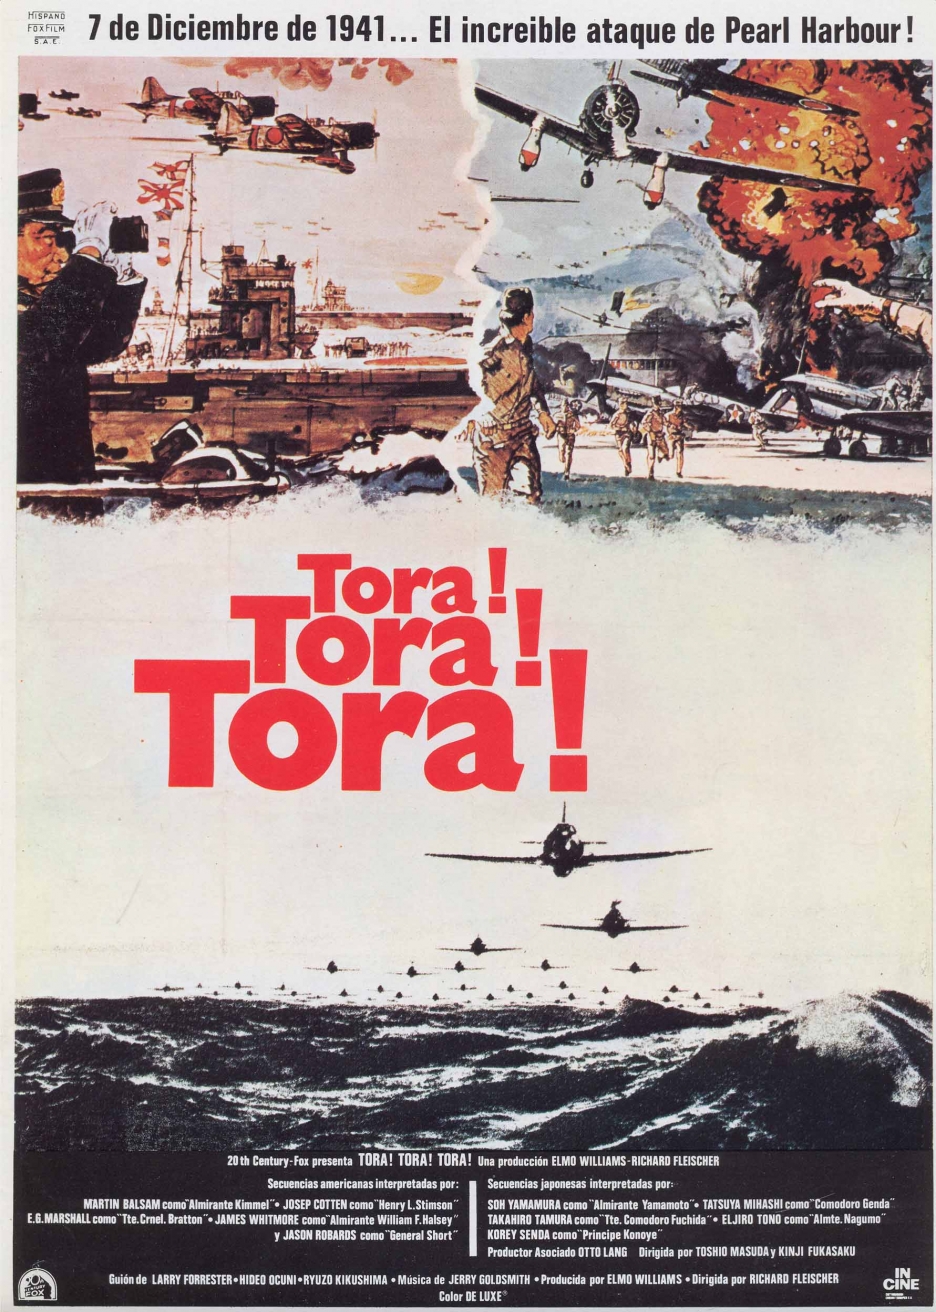 Retrospective Review: Tora! Tora! Tora!